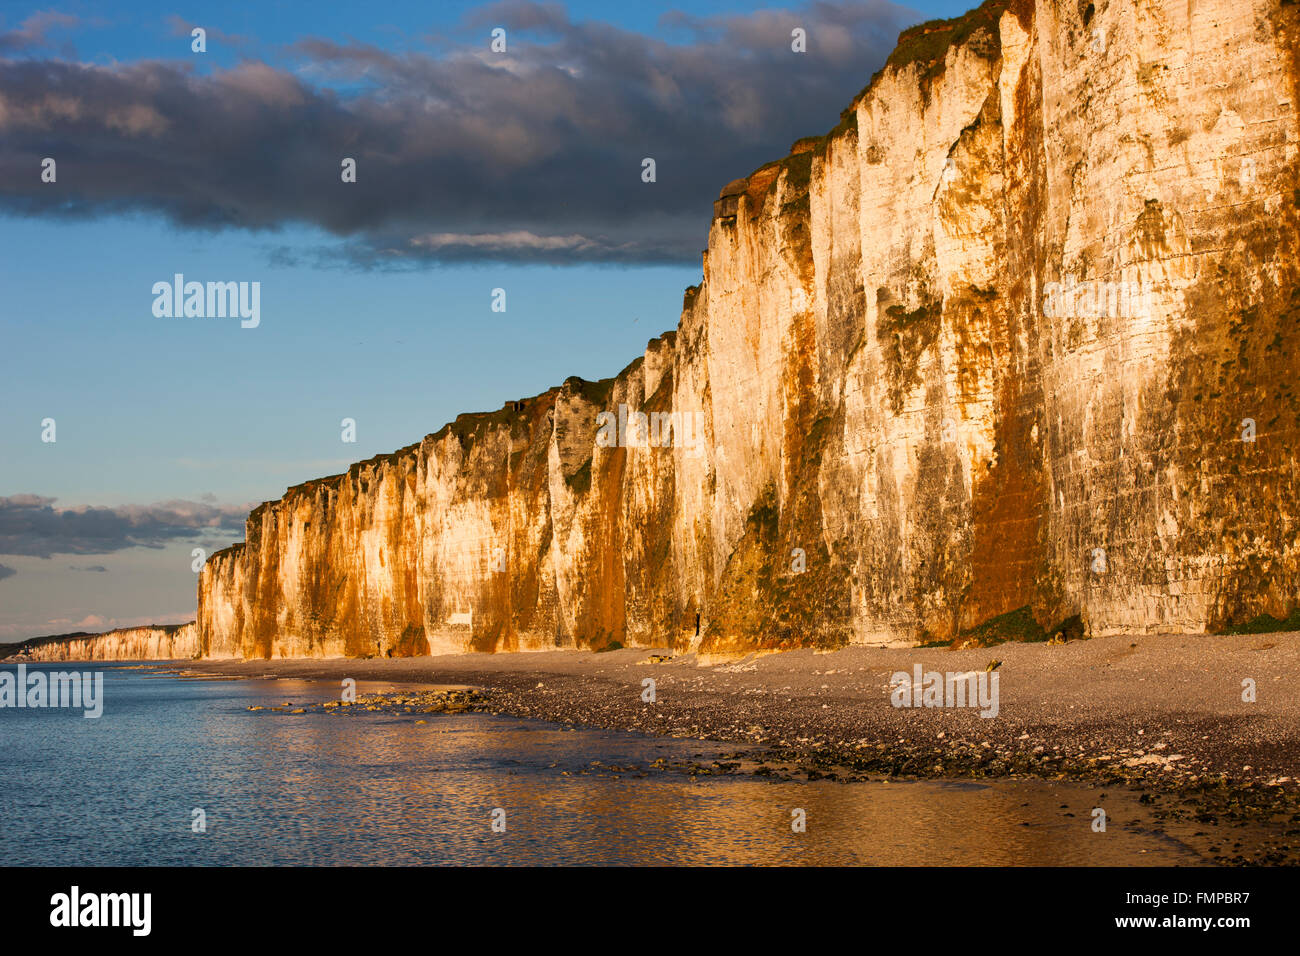 Chalk cliffs on the coast near Saint-Valery-en-Caux, Département Seine-Maritime, Normandy, France Stock Photo